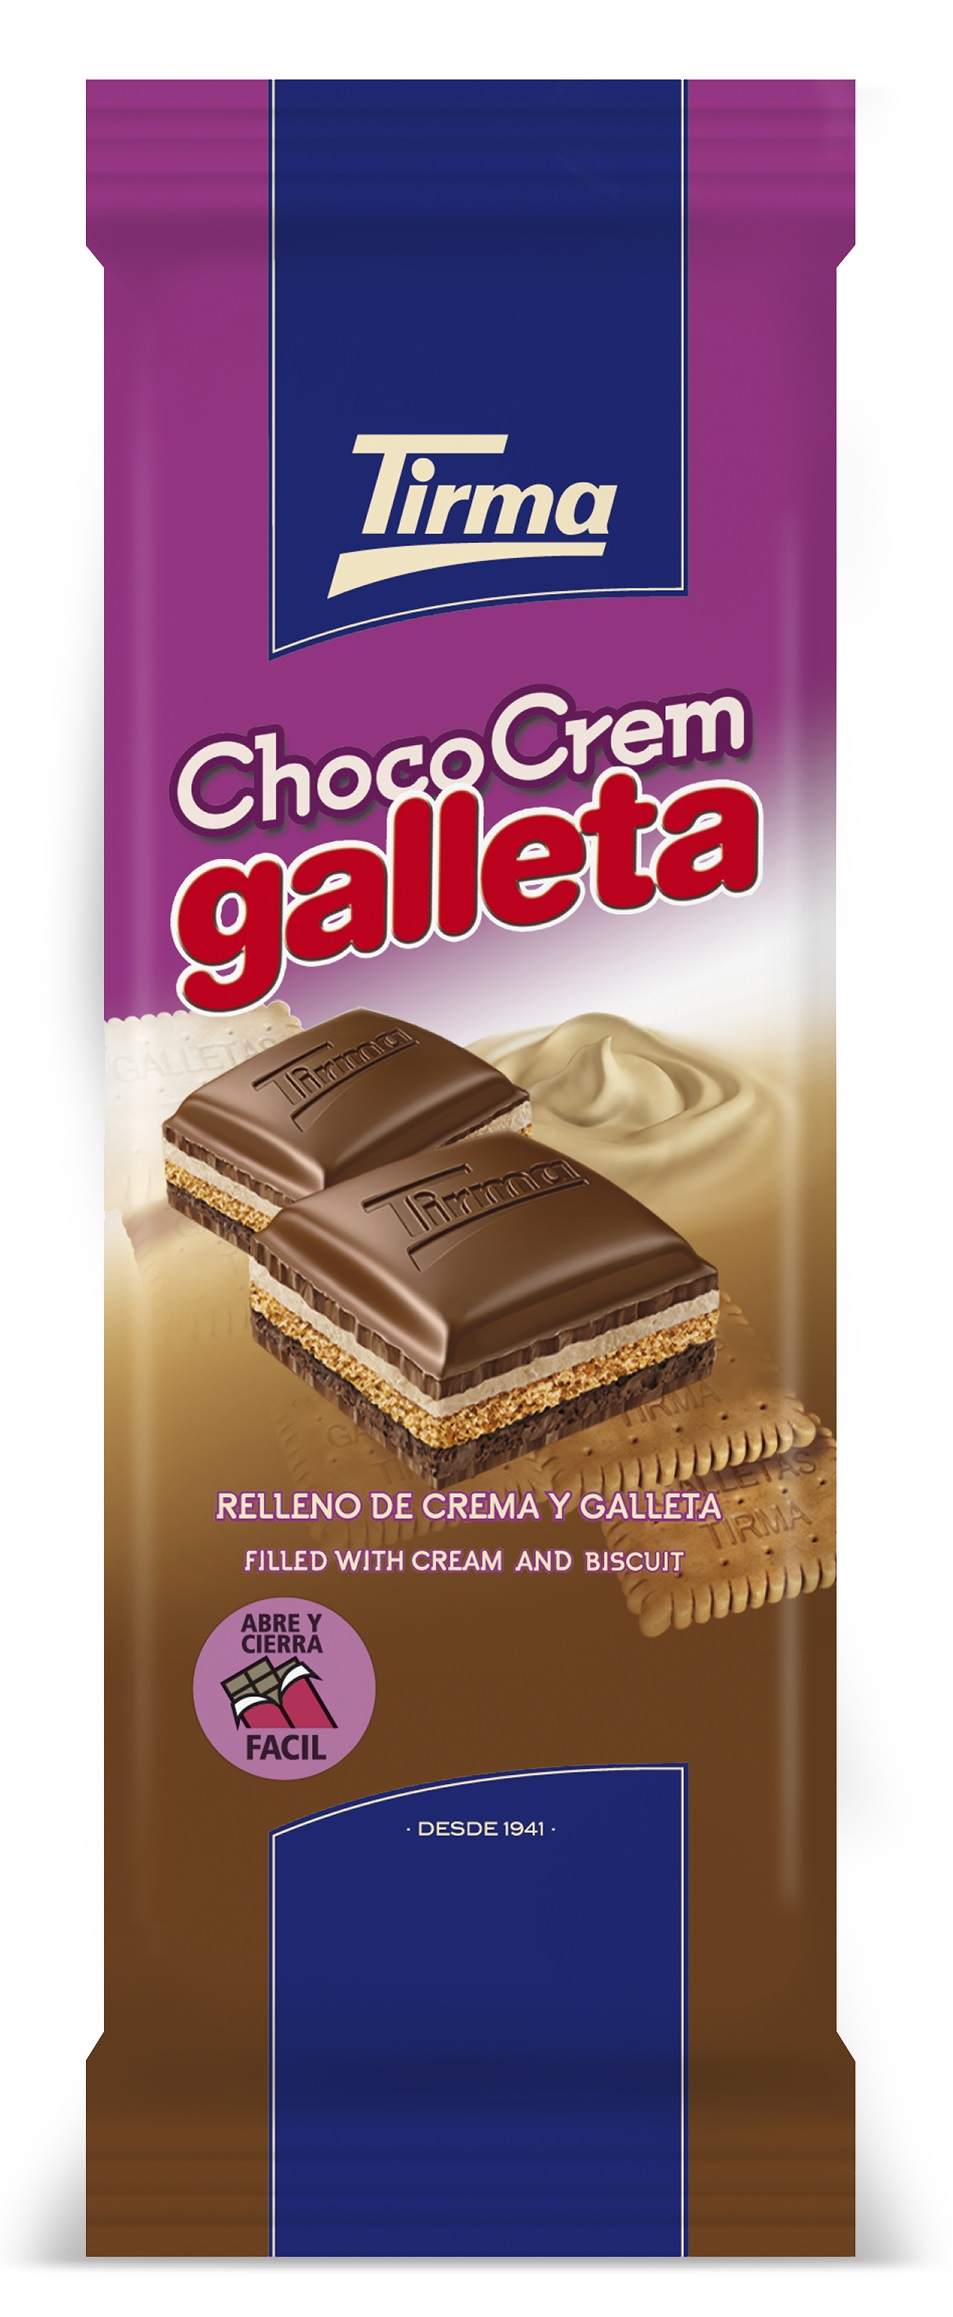 Chocolate Crem Galleta 155g